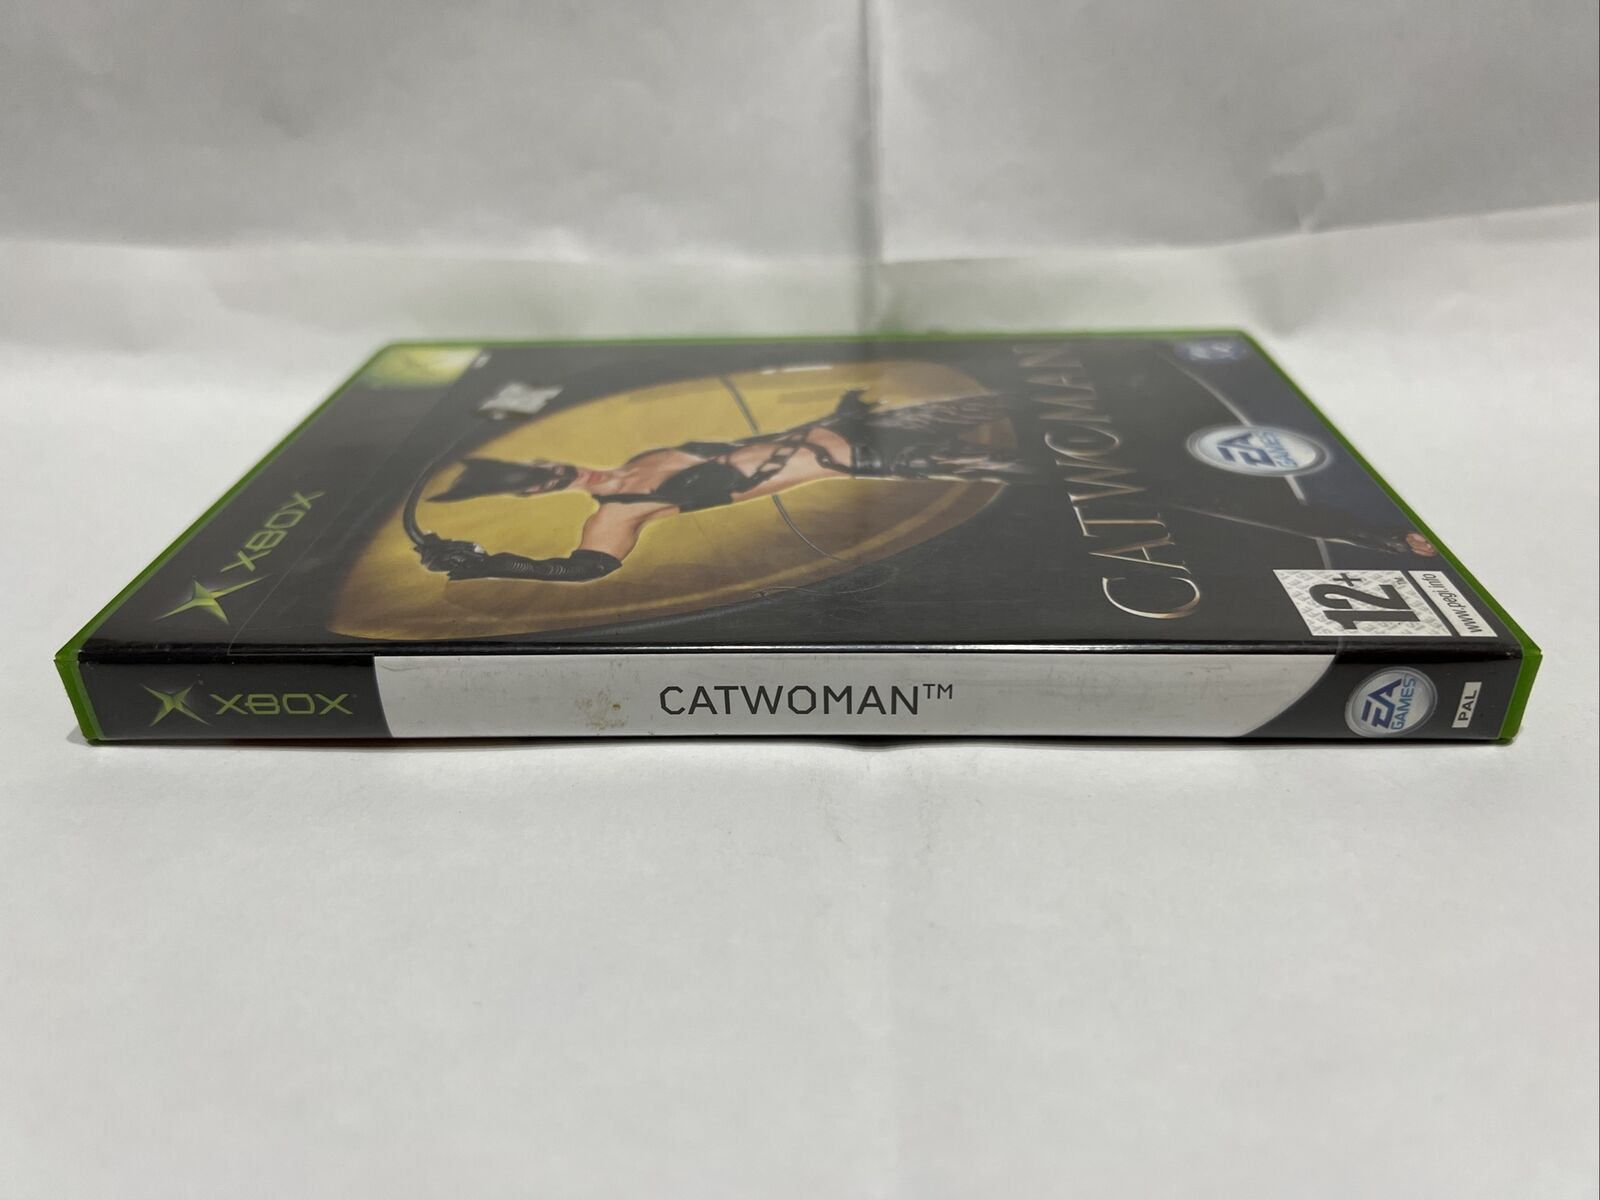 Microsoft-Xbox-Videogioco-Catwoman-Pal-Ita-133961273078-2